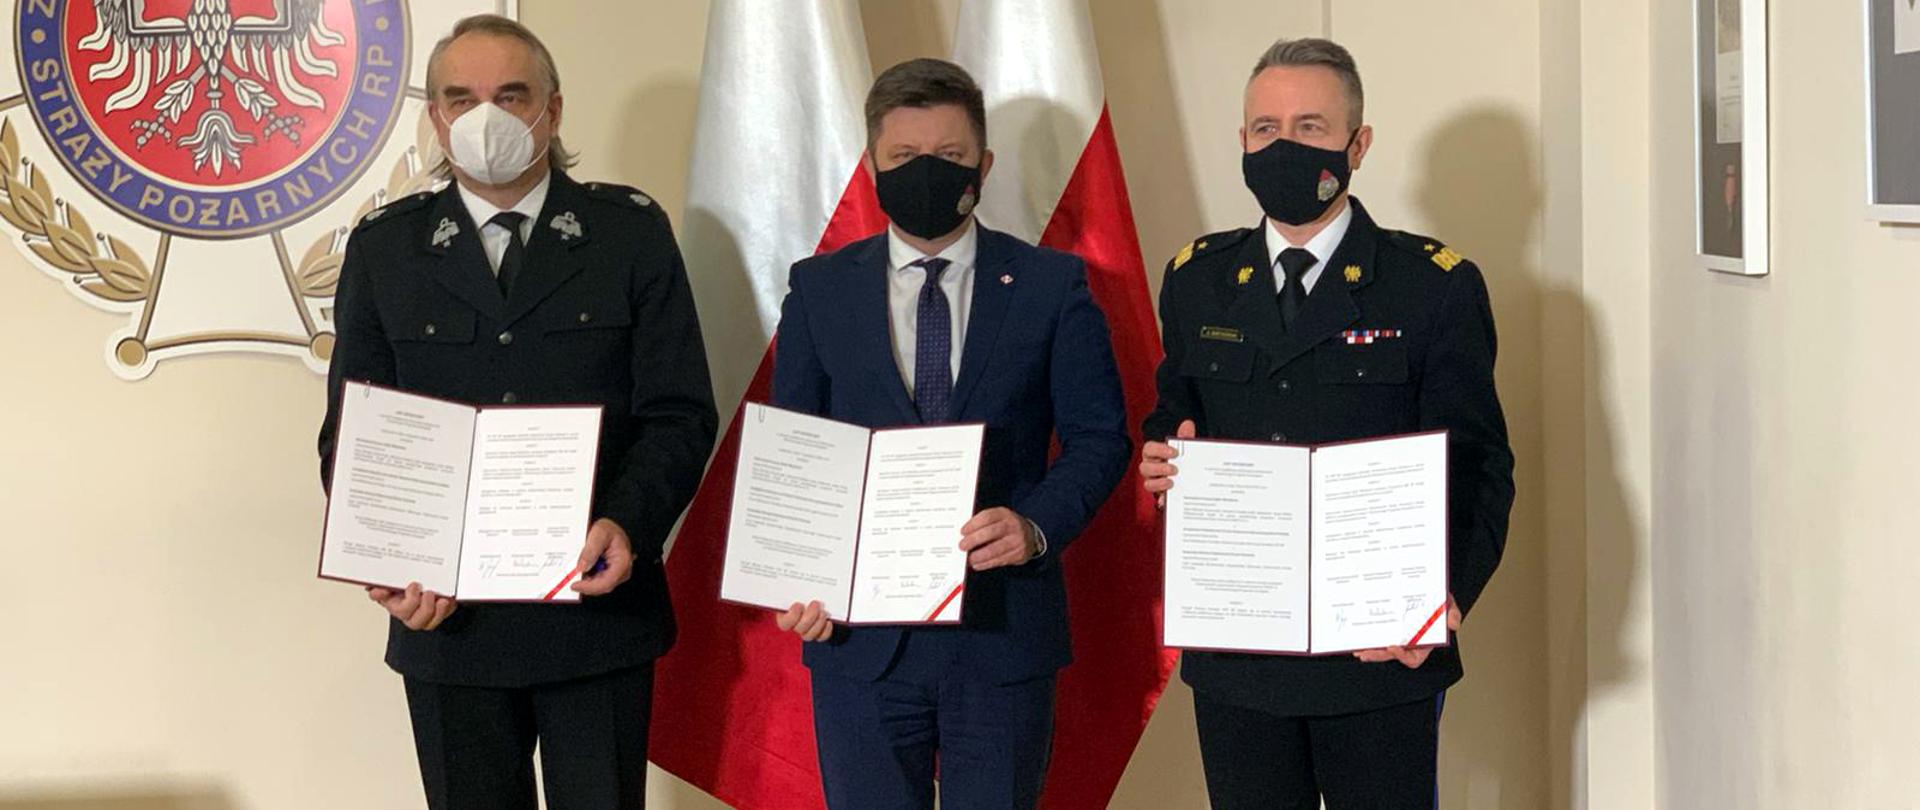 Zdjęcia przedstawia trzy osoby, które prezentują podpisany list intencyjny pomiędzy Kancelarią Prezesa Rady Ministrów, Zarządem Głównym ZOSP RP oraz Komendą Główną PSP. W tle stoja dwie Flagi Rzeczypospolitej Polskiej. Po lewej stronie zdjęcia u góry herb ZOSP RP.